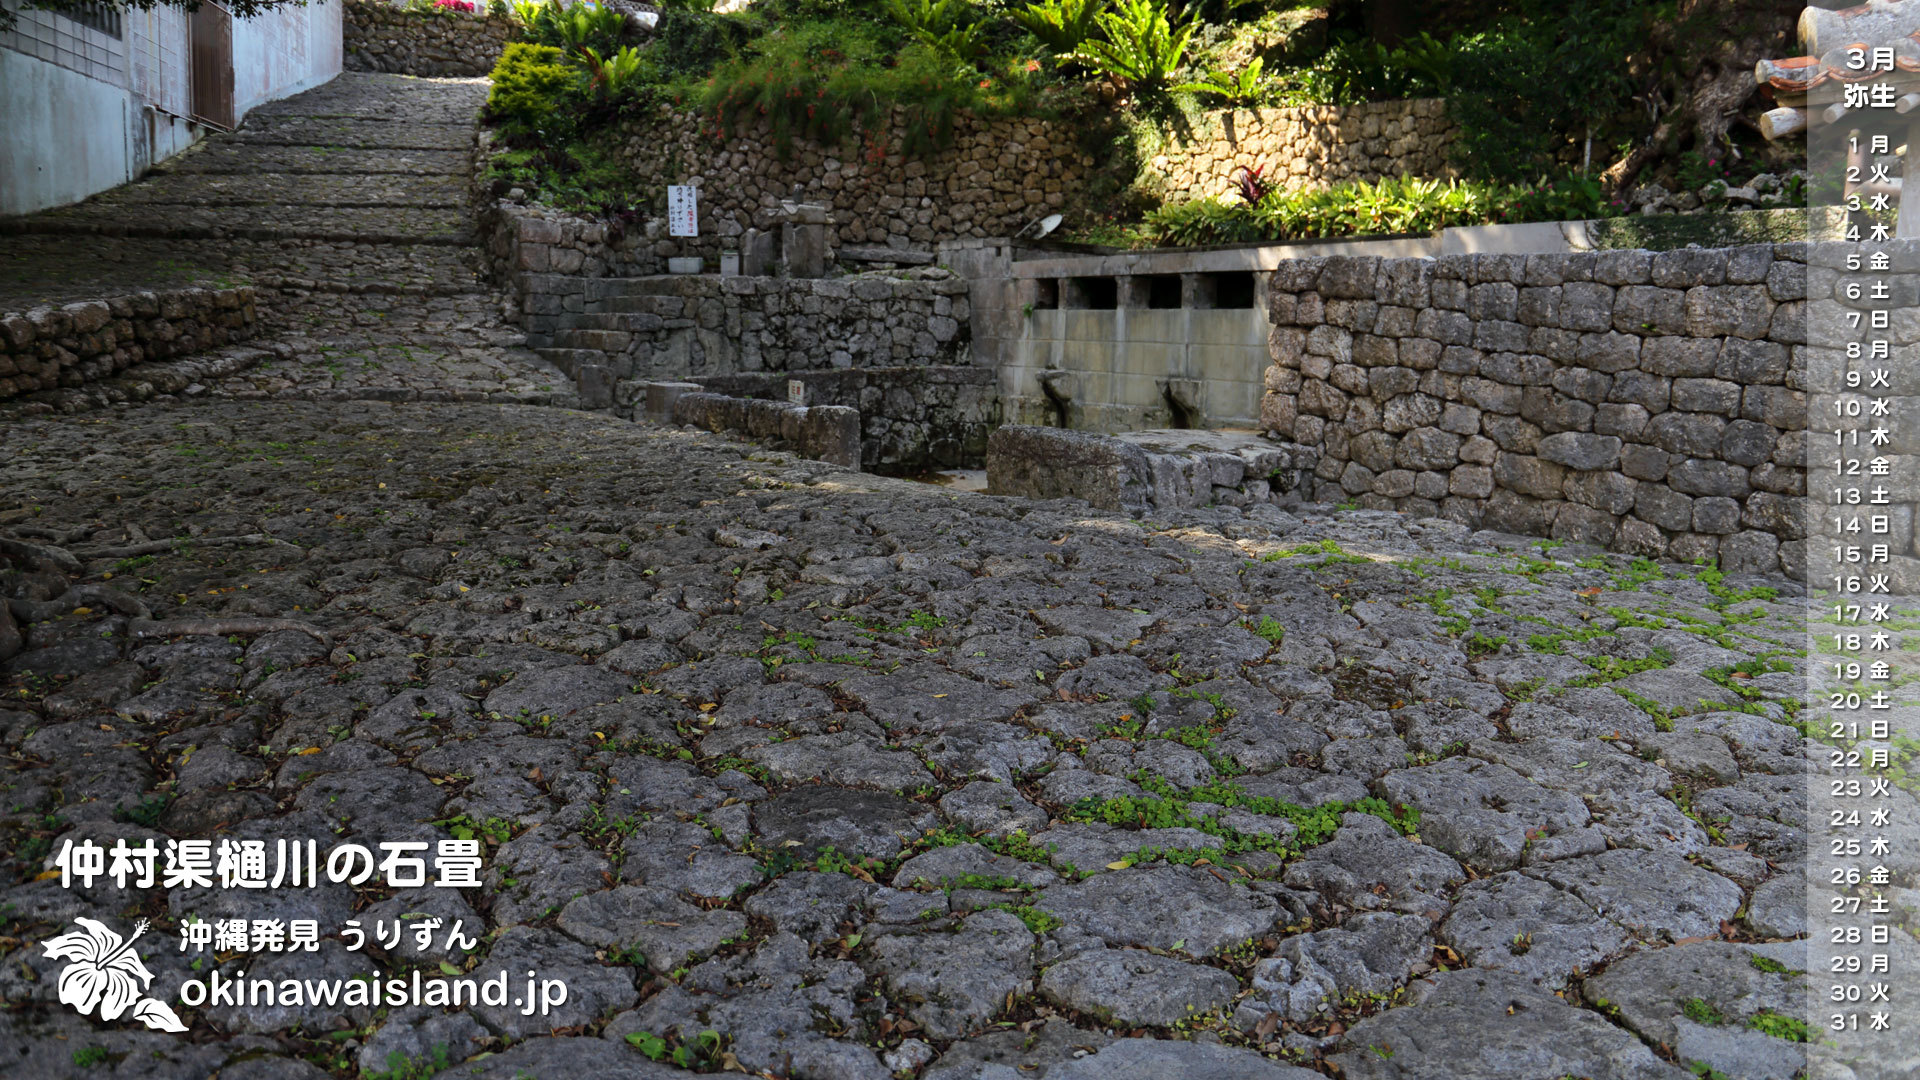 沖縄の風景 壁紙 デスクトップカレンダー 無料ダウンロード 仲村渠樋川の石畳